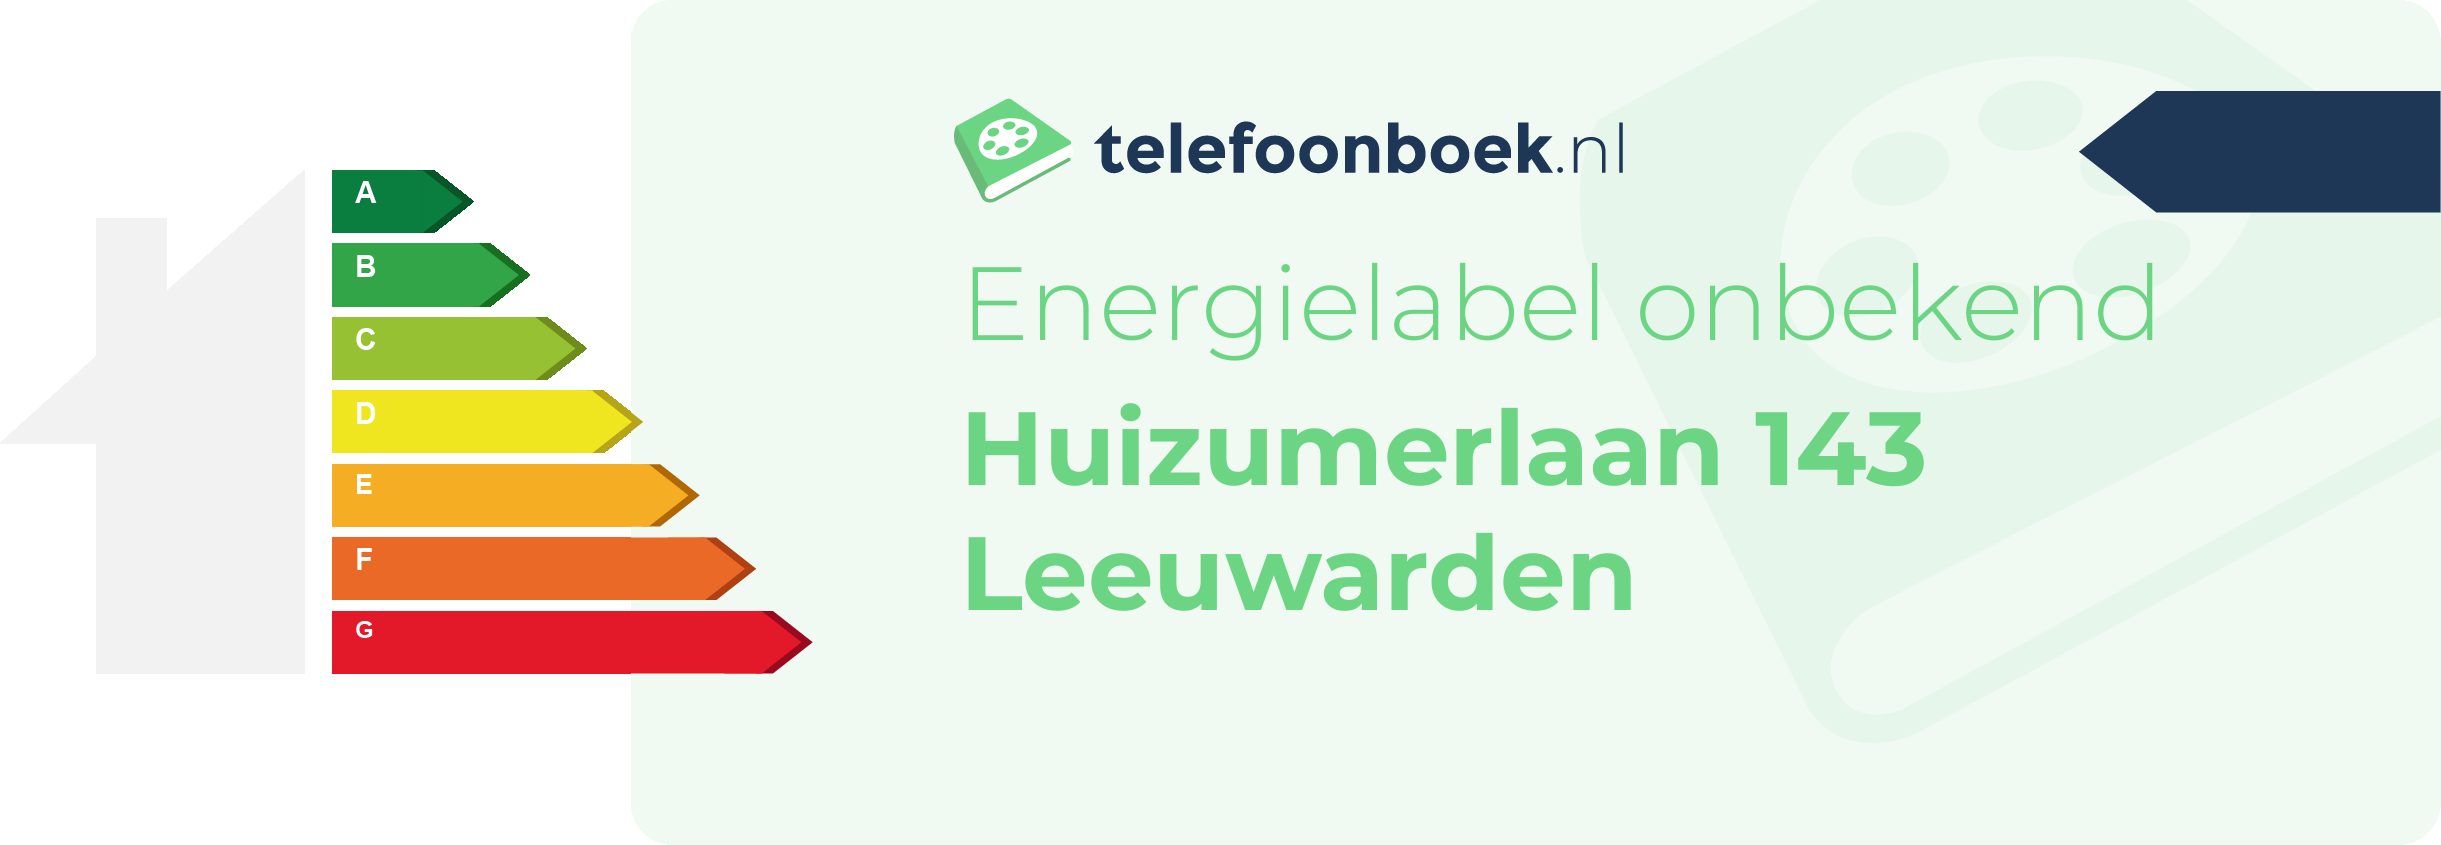 Energielabel Huizumerlaan 143 Leeuwarden